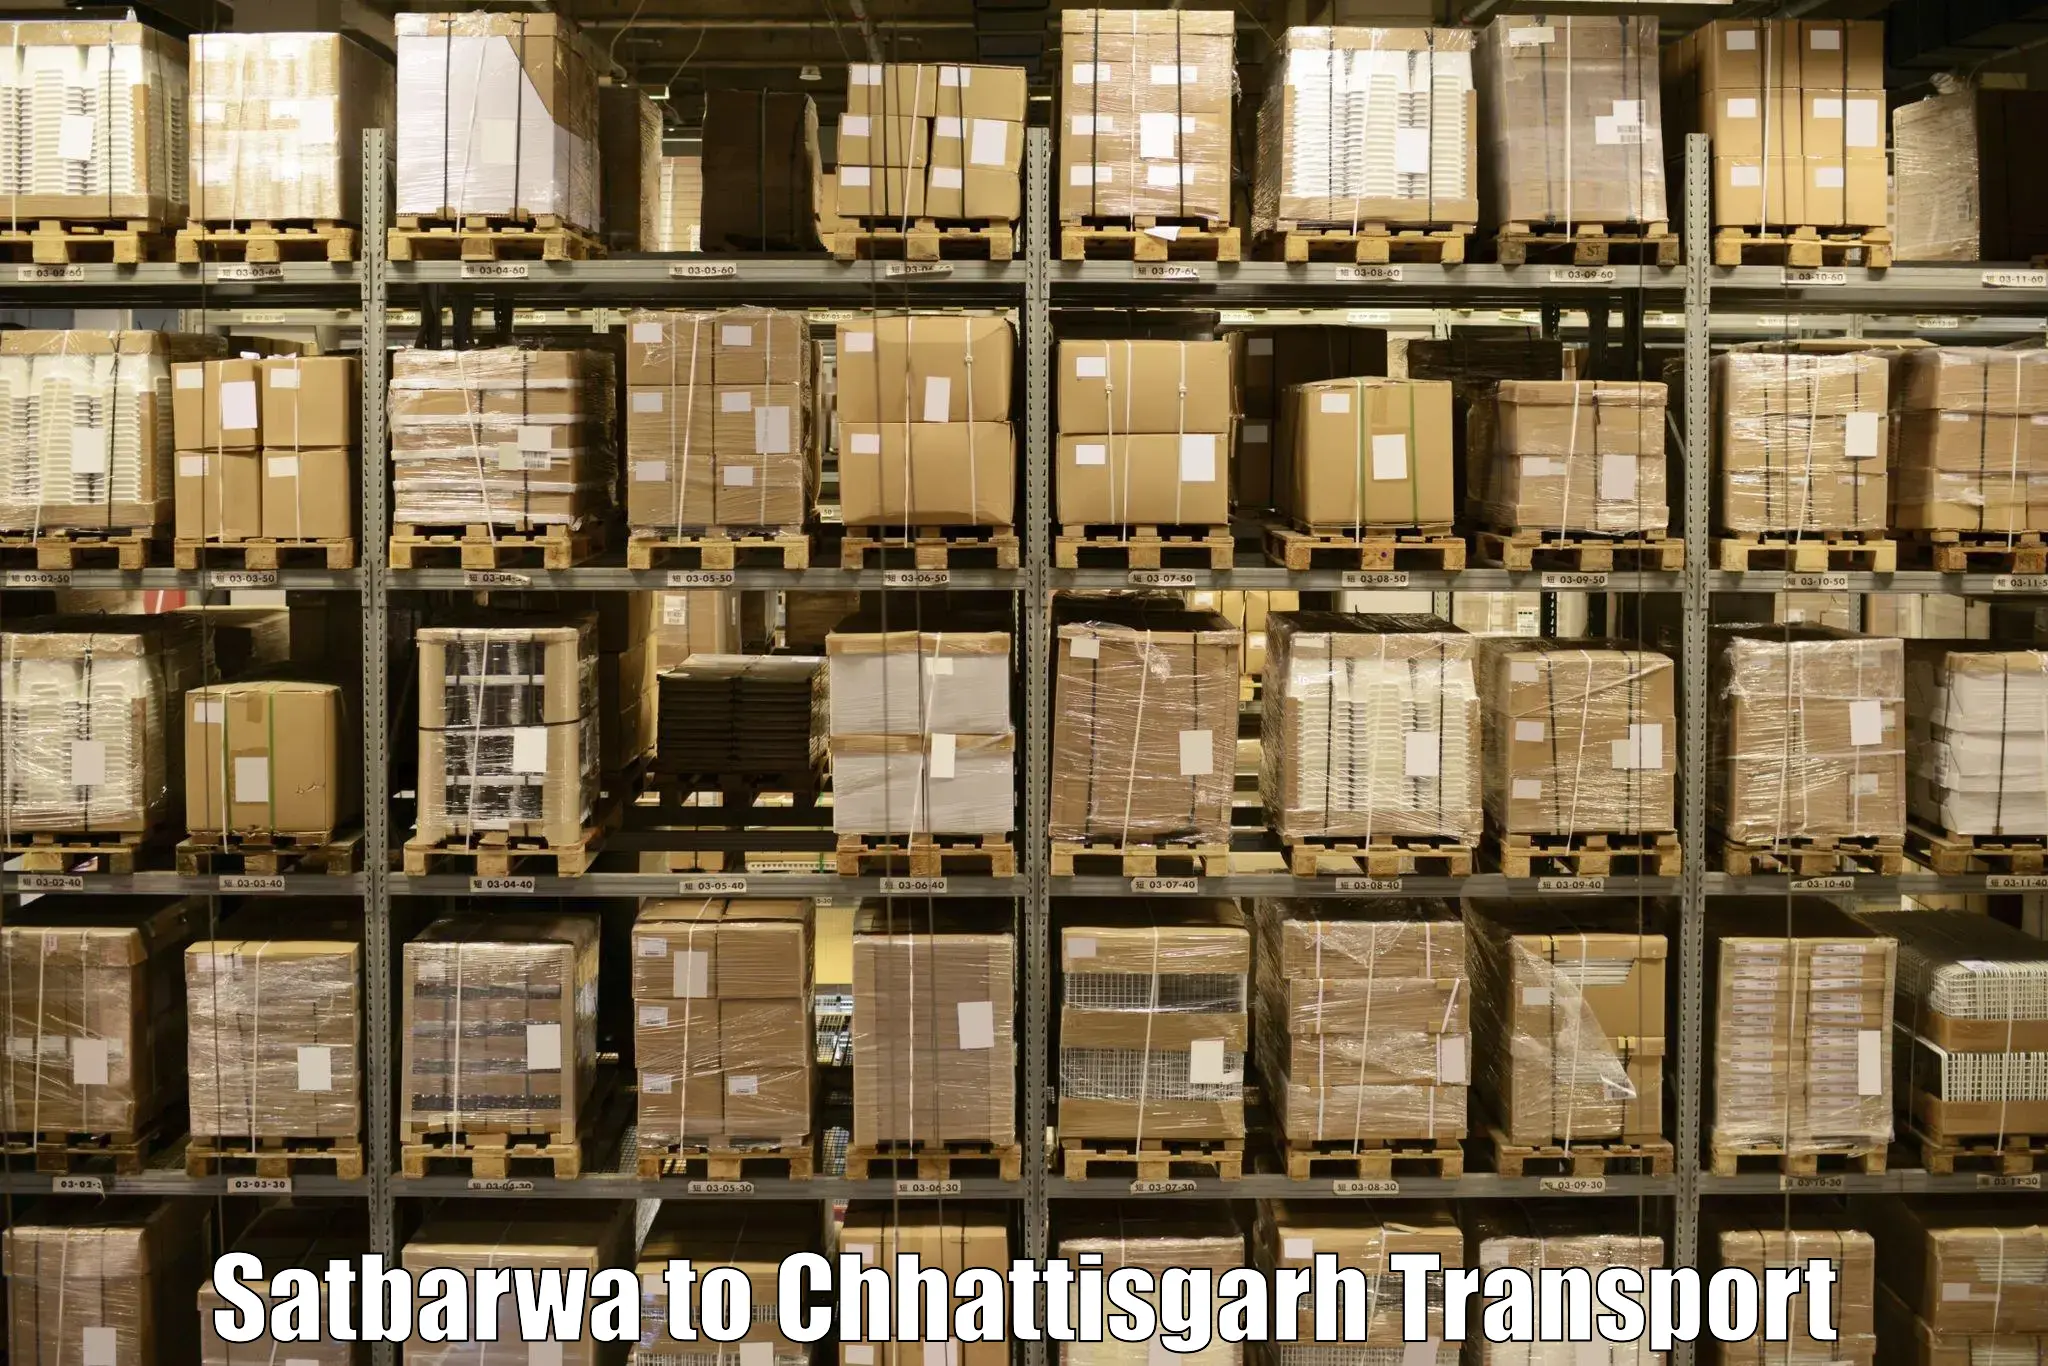 Intercity transport Satbarwa to Mandhar